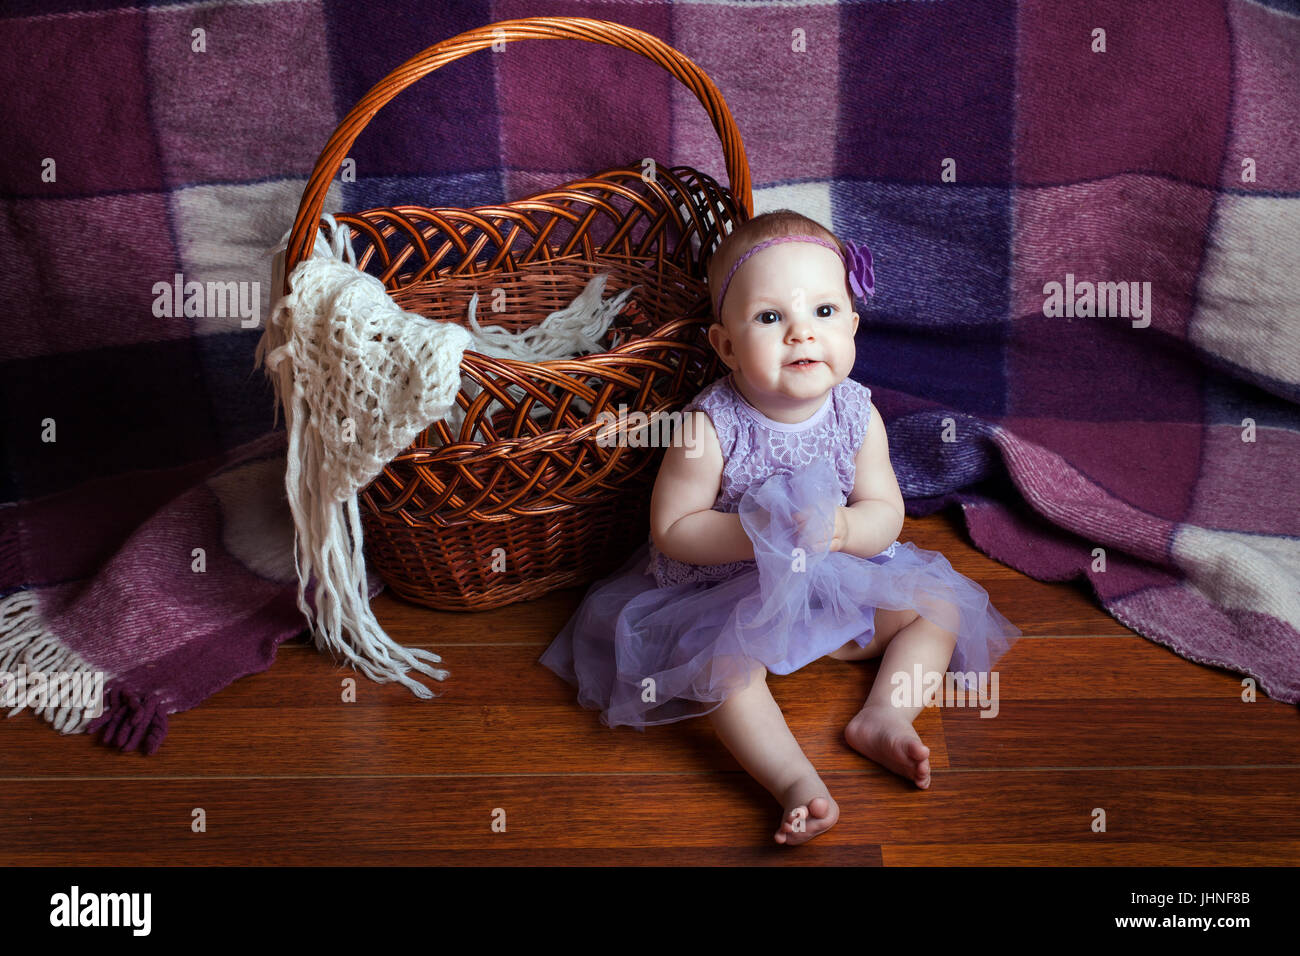 Kleines Mädchen in einem wunderschönen lila Kleid sitzt in der Nähe von Weidenkorb Stockfoto